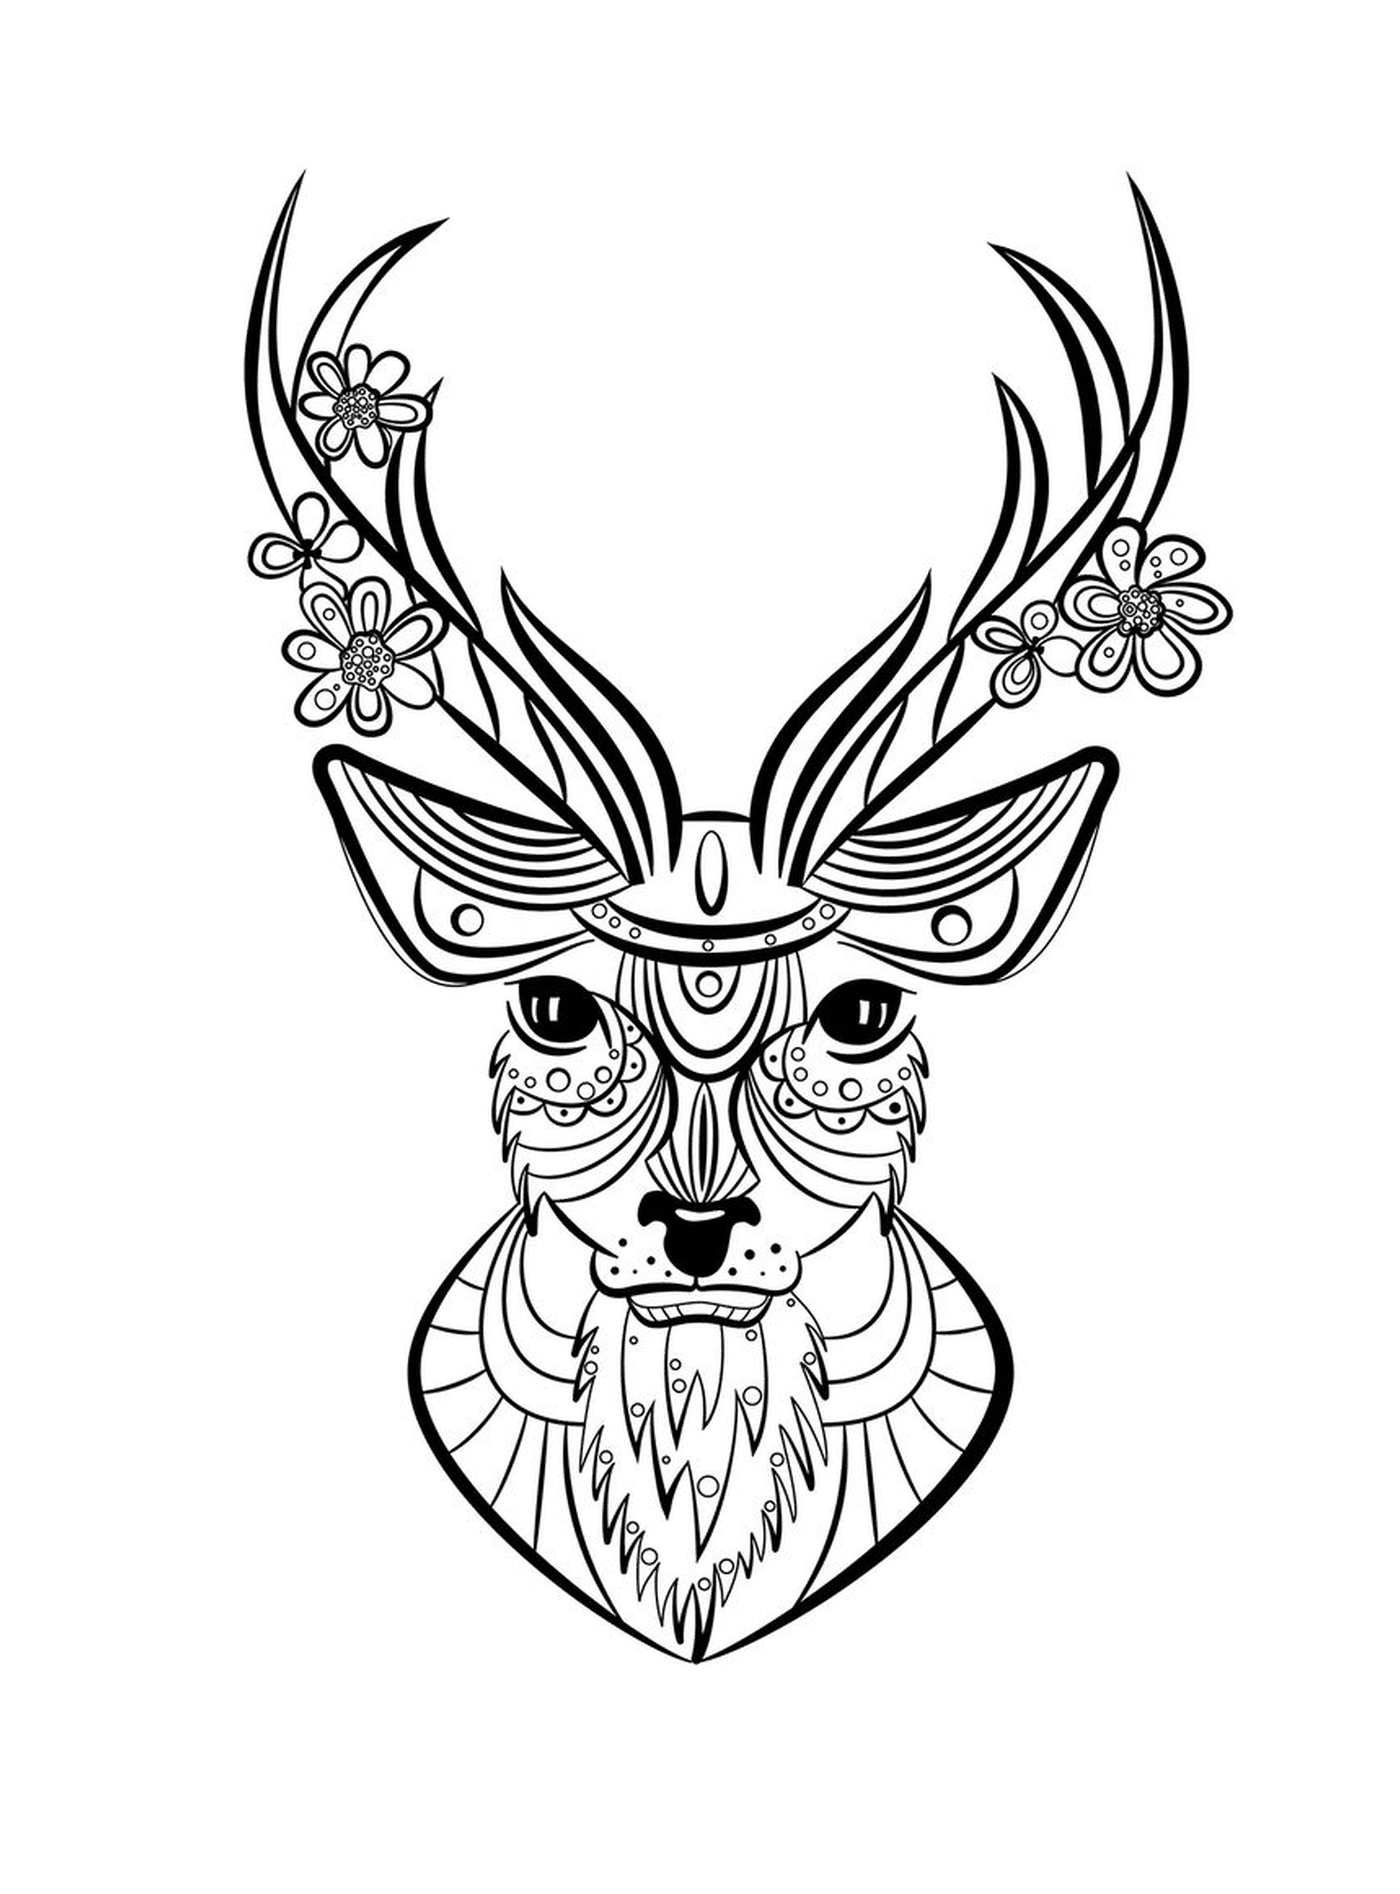  Cerf con cabeza decorada con motivos florales 